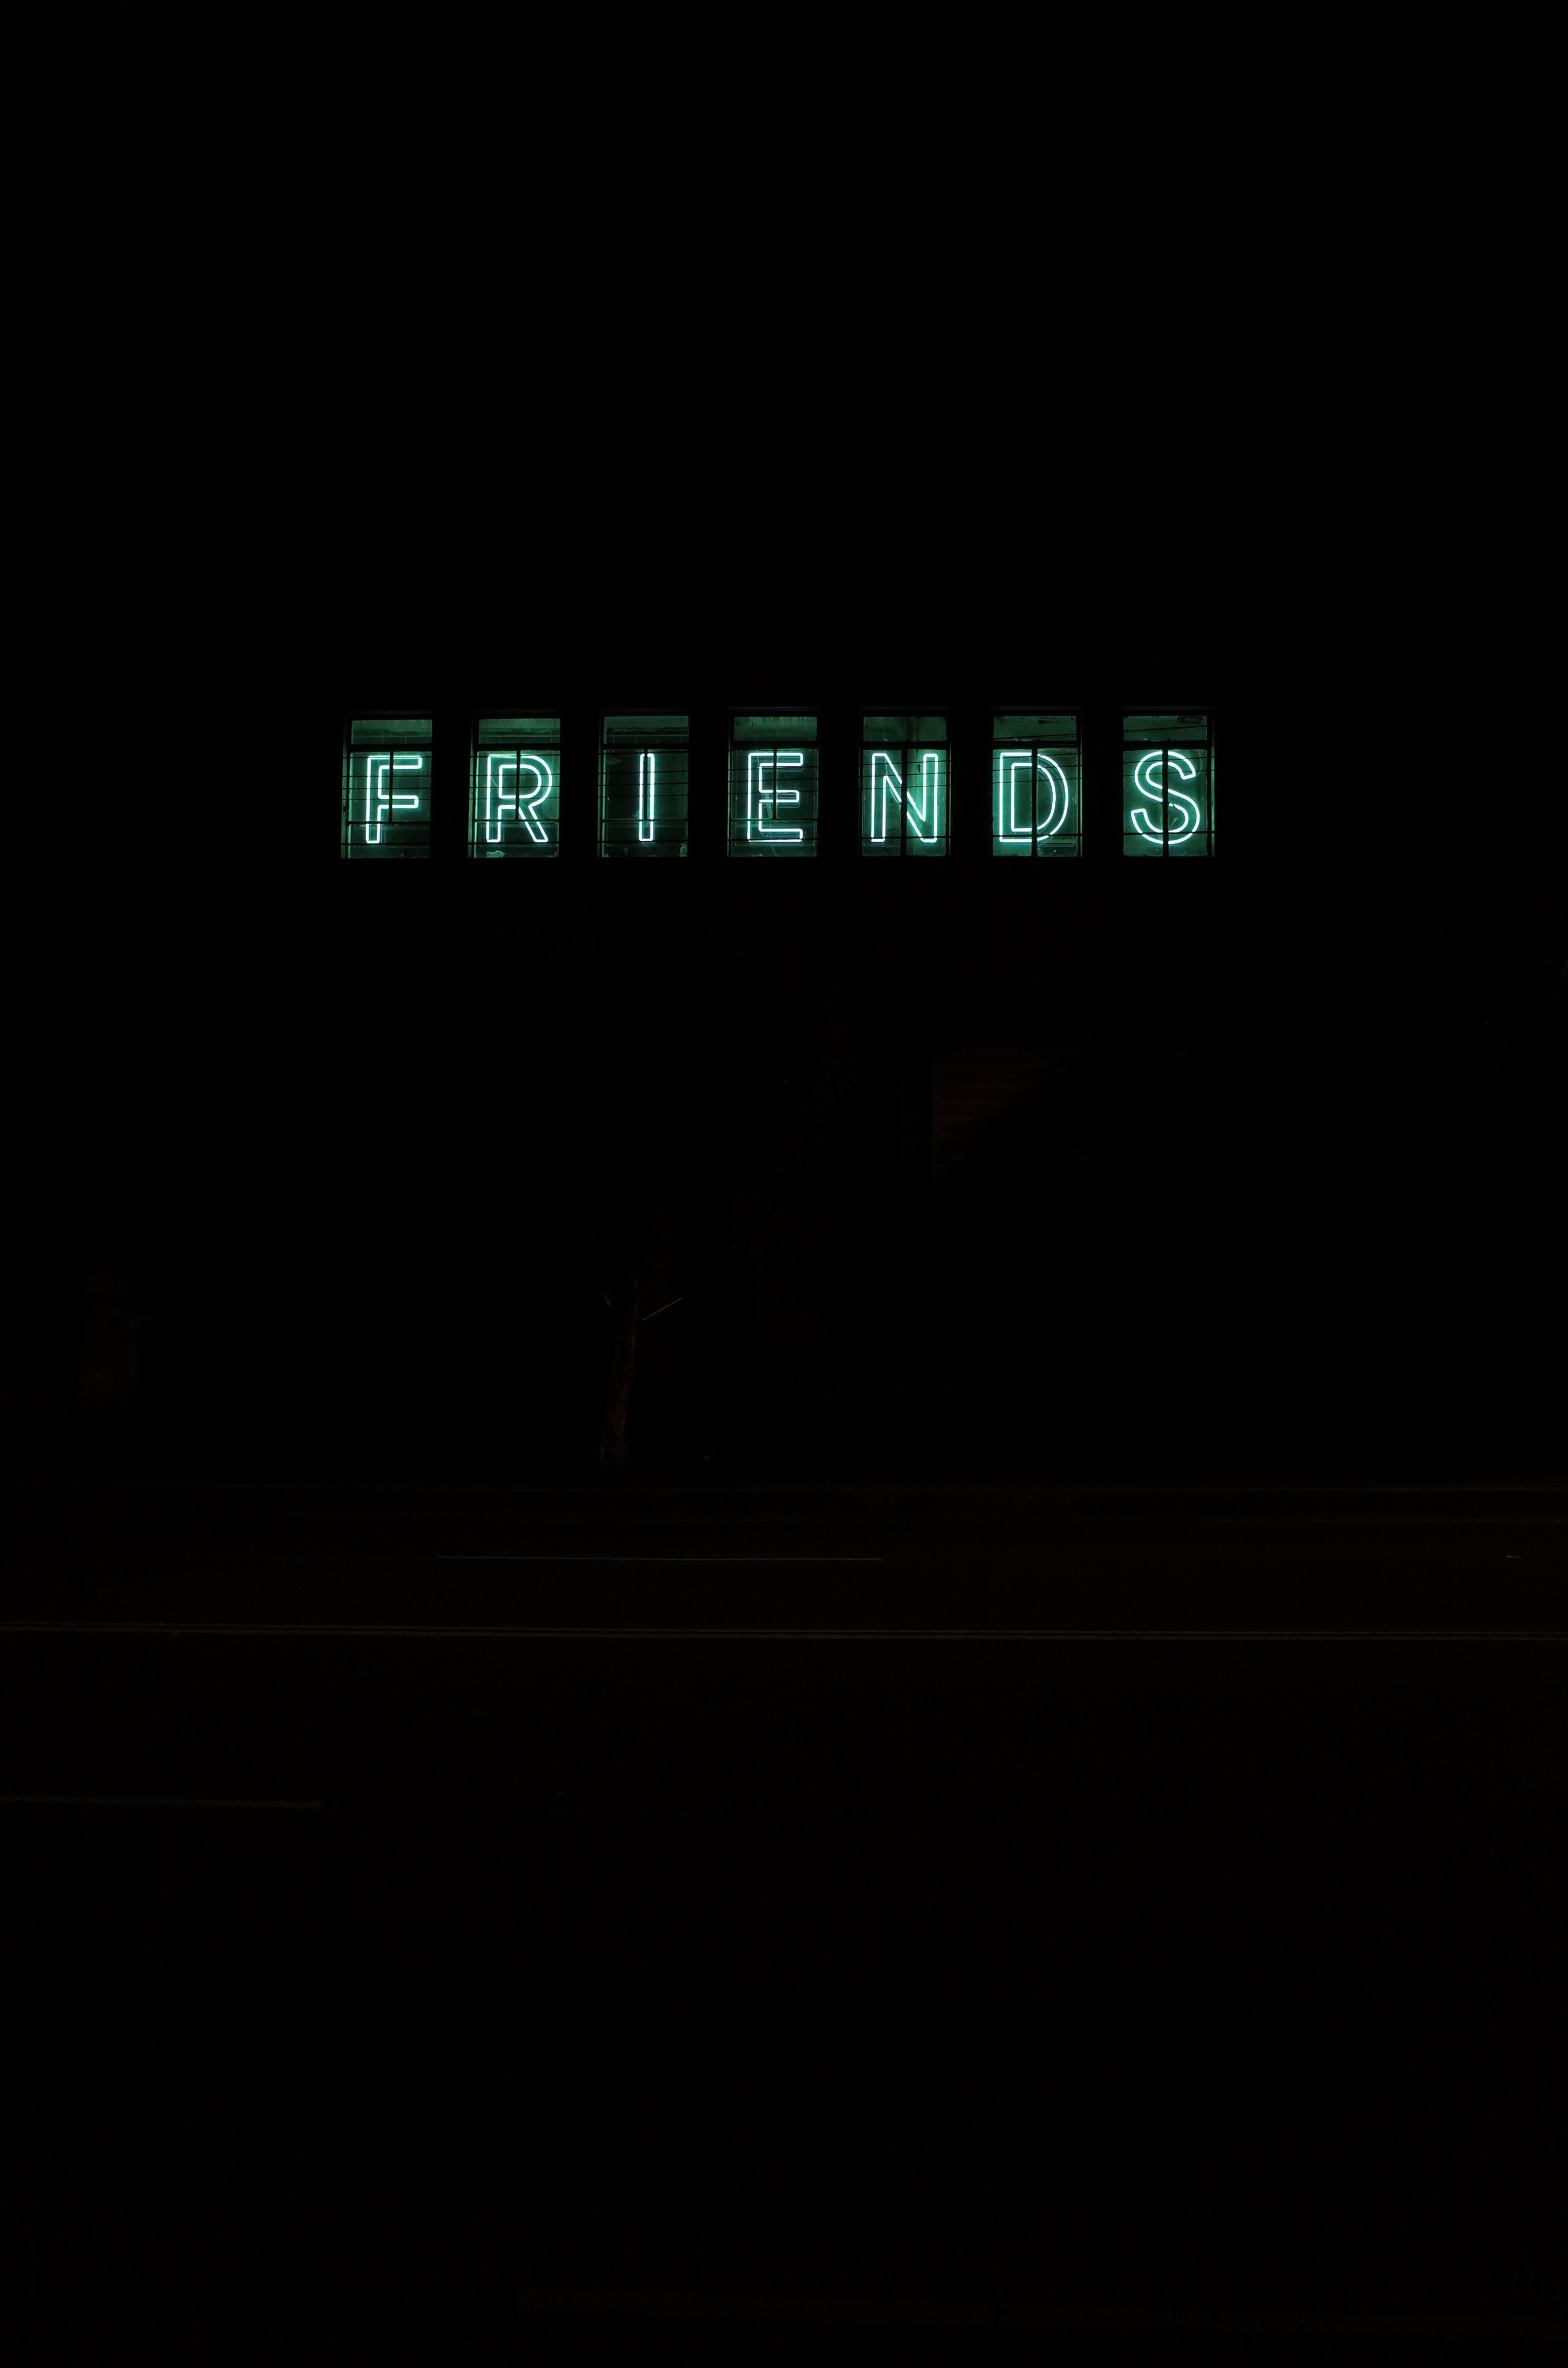 friends, dark, backlight, letters, neon, words, illumination, inscription Full HD